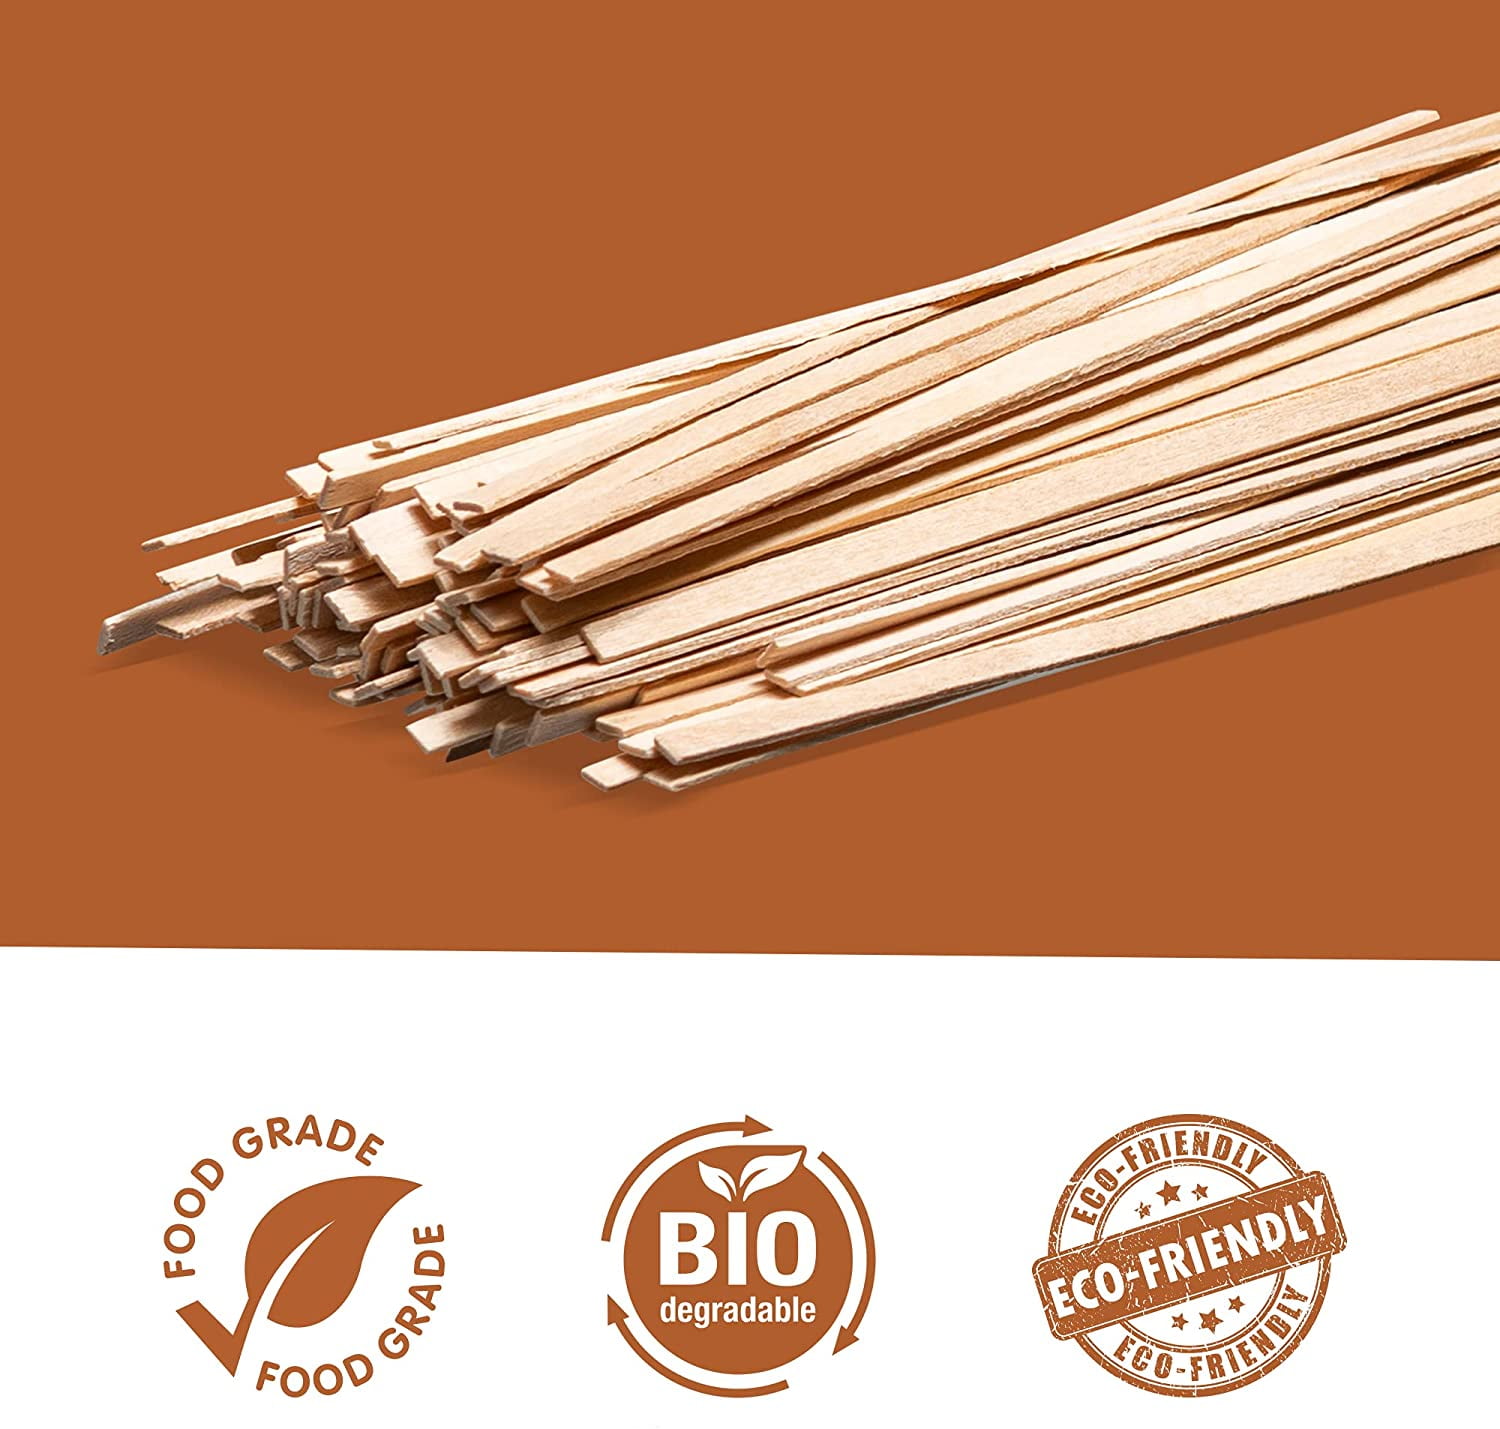 5.5 Inch Wooden Stirrers by PolyKing Stir Sticks